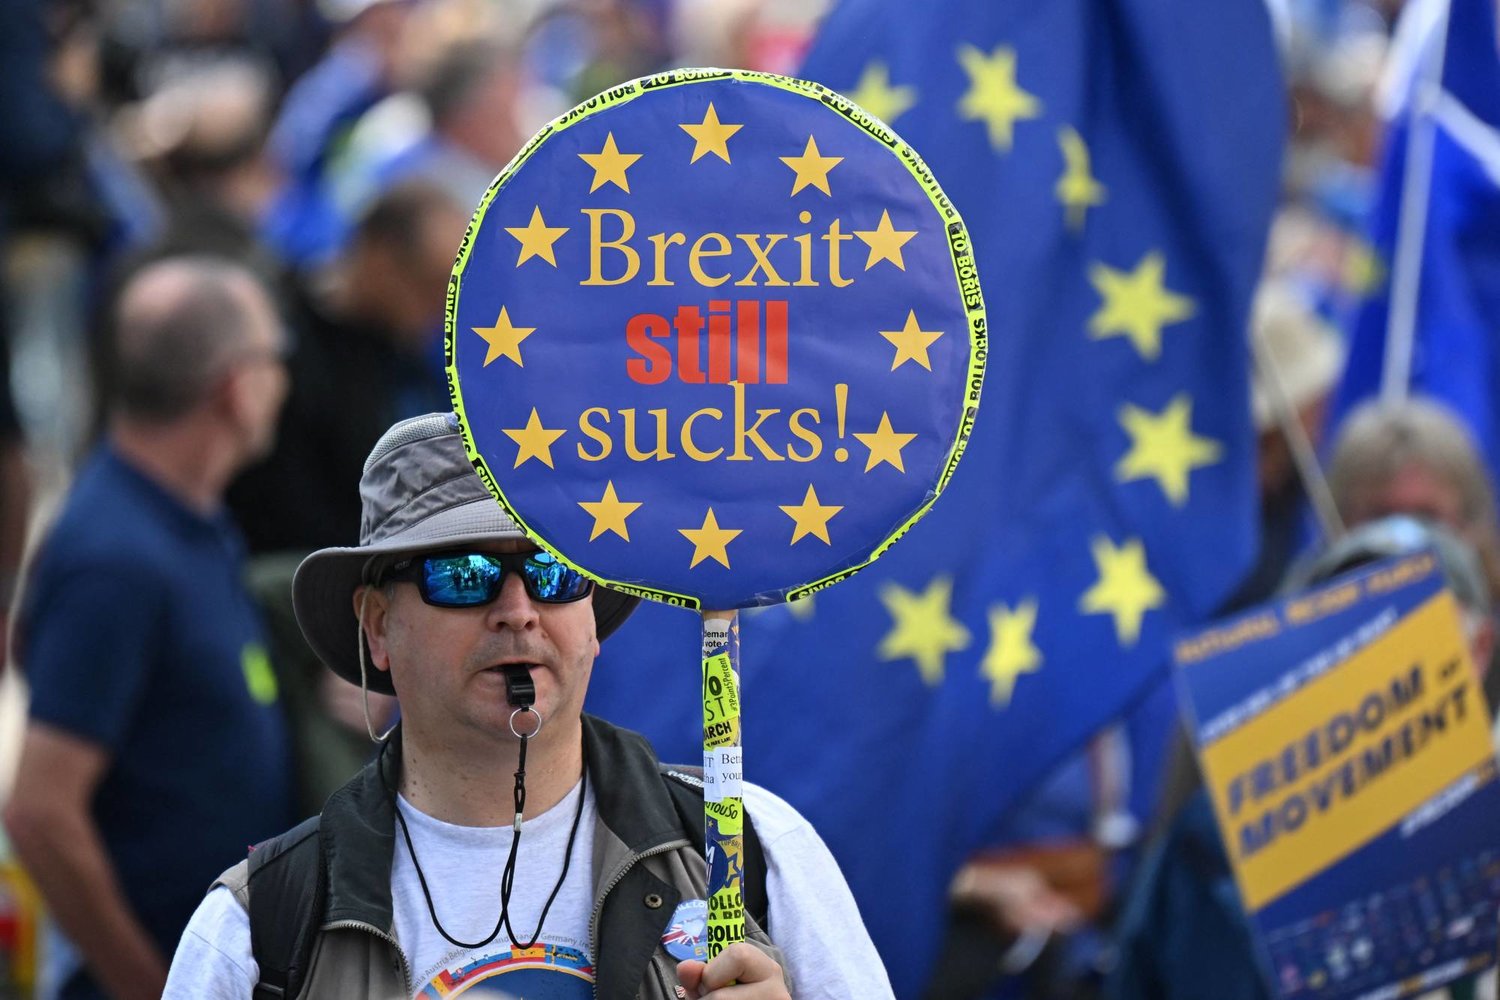 متظاهر يحمل لافتة مناهضة لخروج بريطانيا من الاتحاد الأوروبي خلال مسيرة تطالب بانضمام المملكة المتحدة إلى الاتحاد الأوروبي في وسط لندن (وكالة الصحافة الفرنسية)